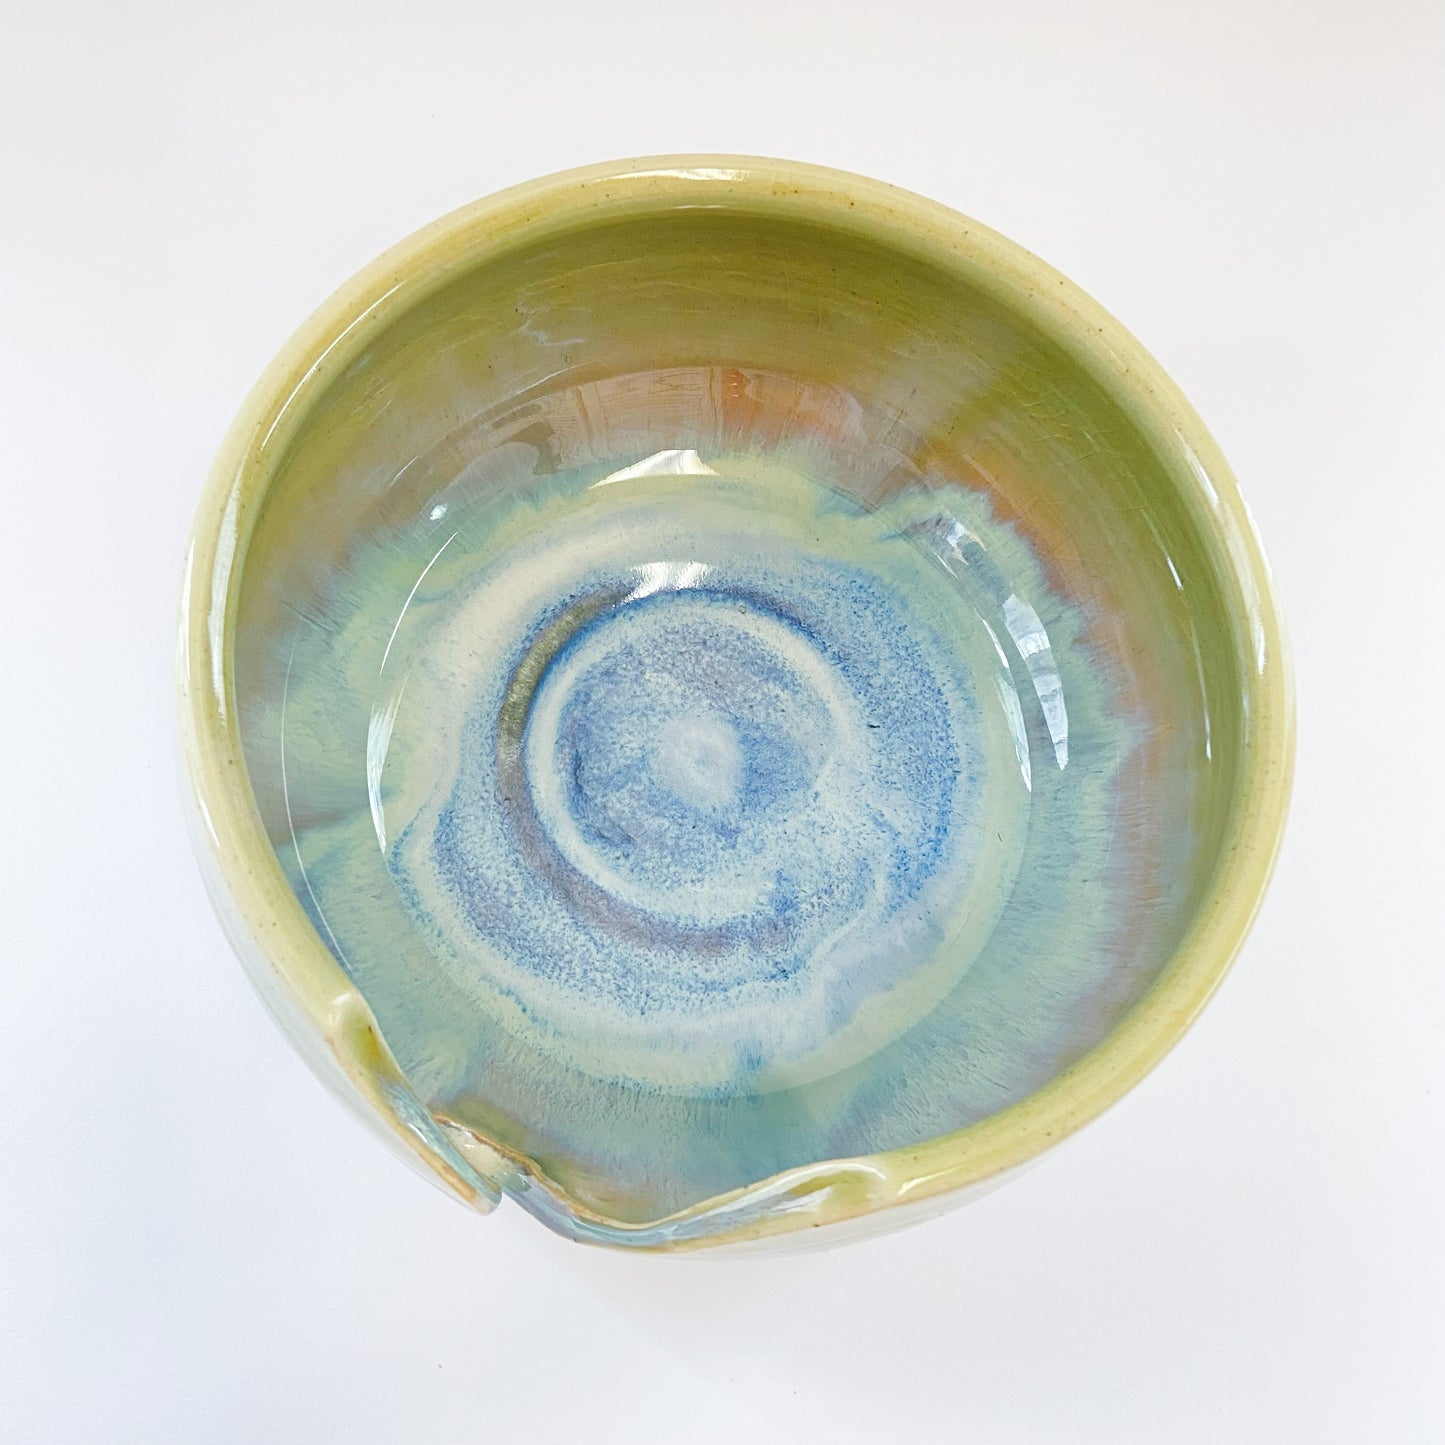 Handmade Ceramic Yarn Bowl